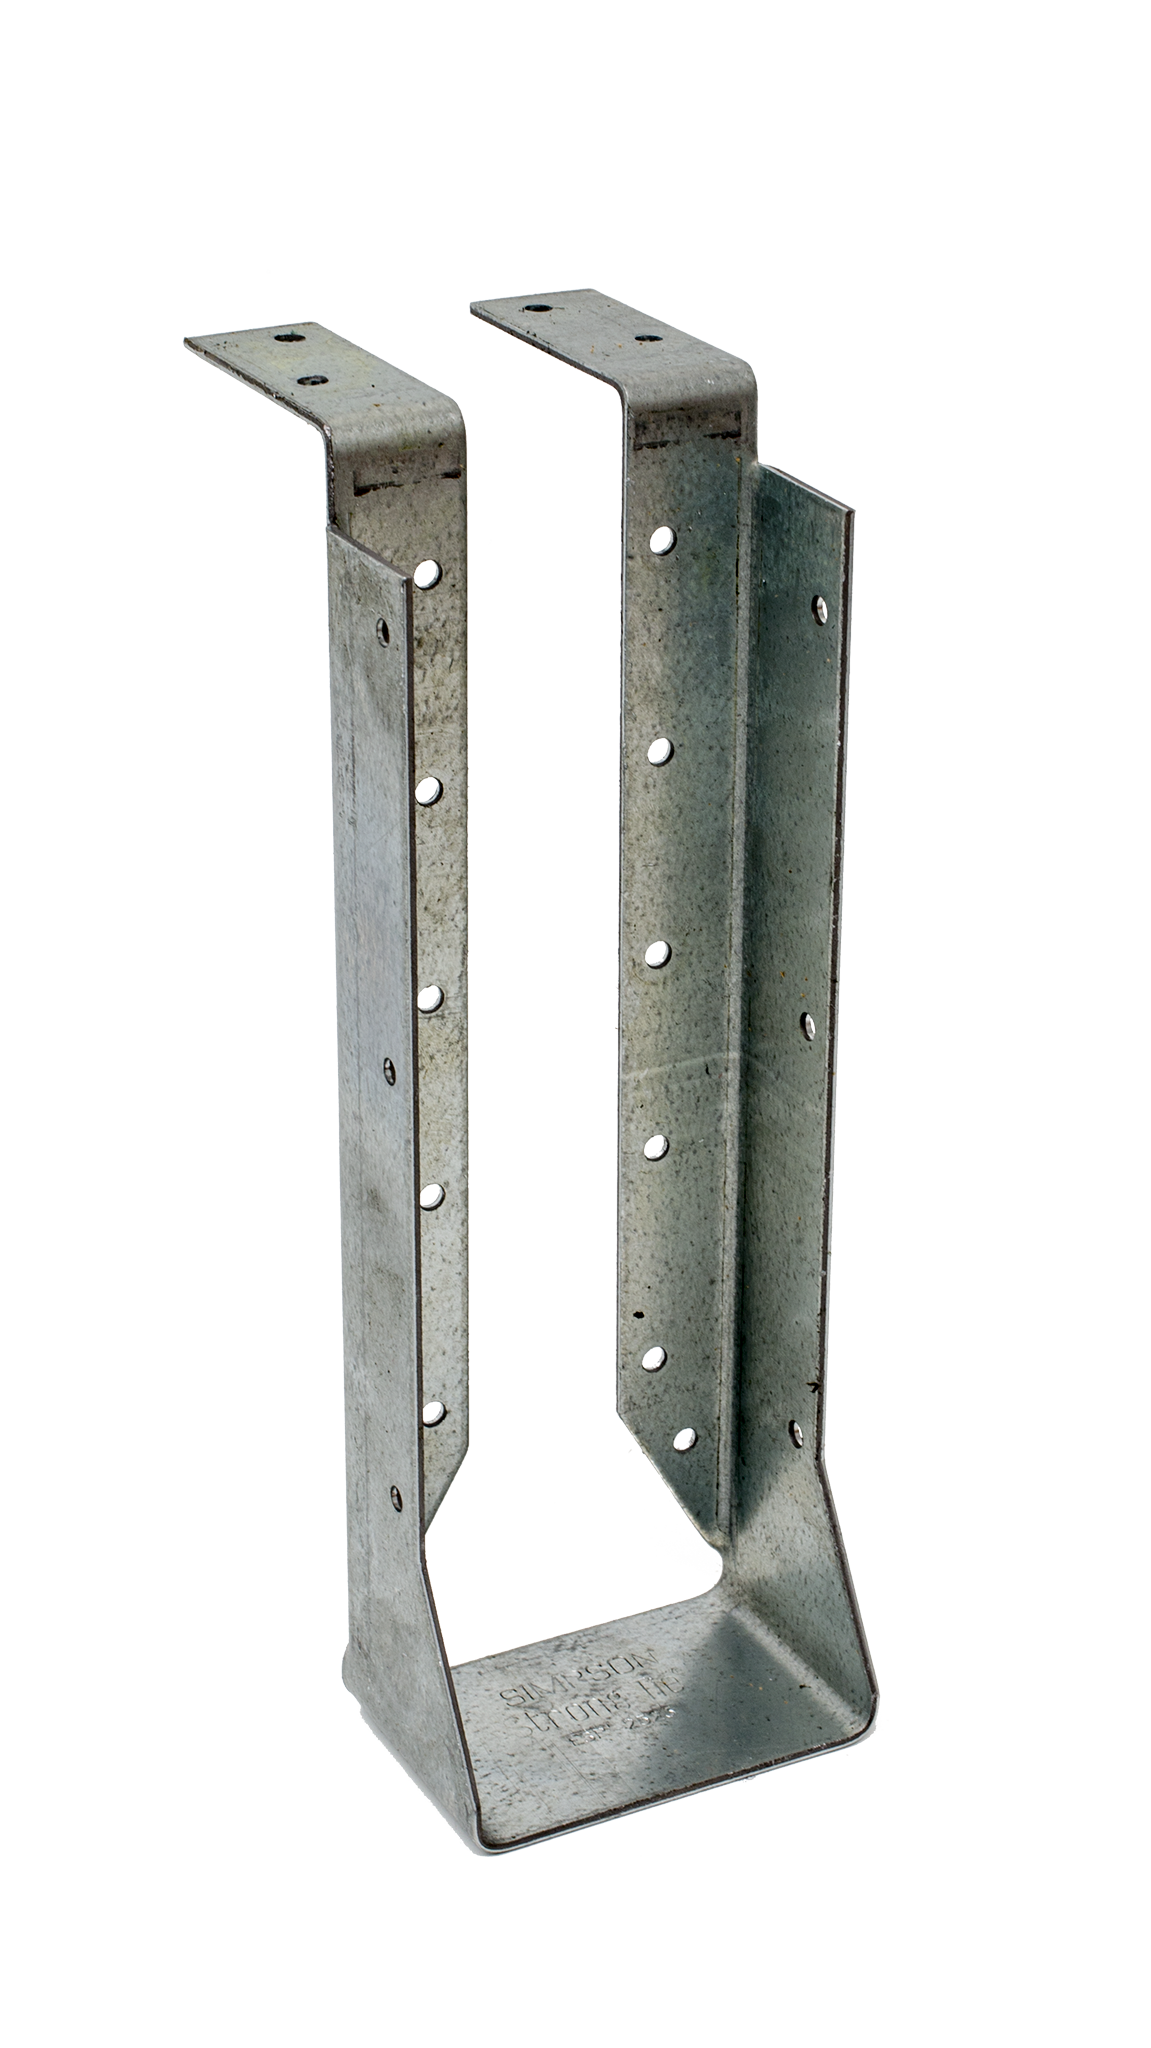 HUCTF Galvanized Top-Flange Concealed-Flange Joist Hanger for 4x12